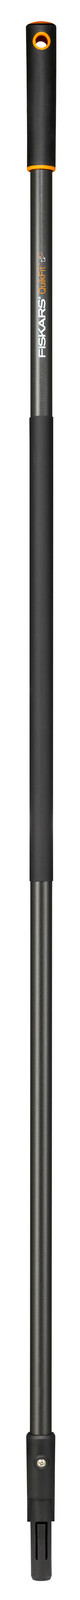 Черенок для лопаты Fiskars QuikFit L (1000661)